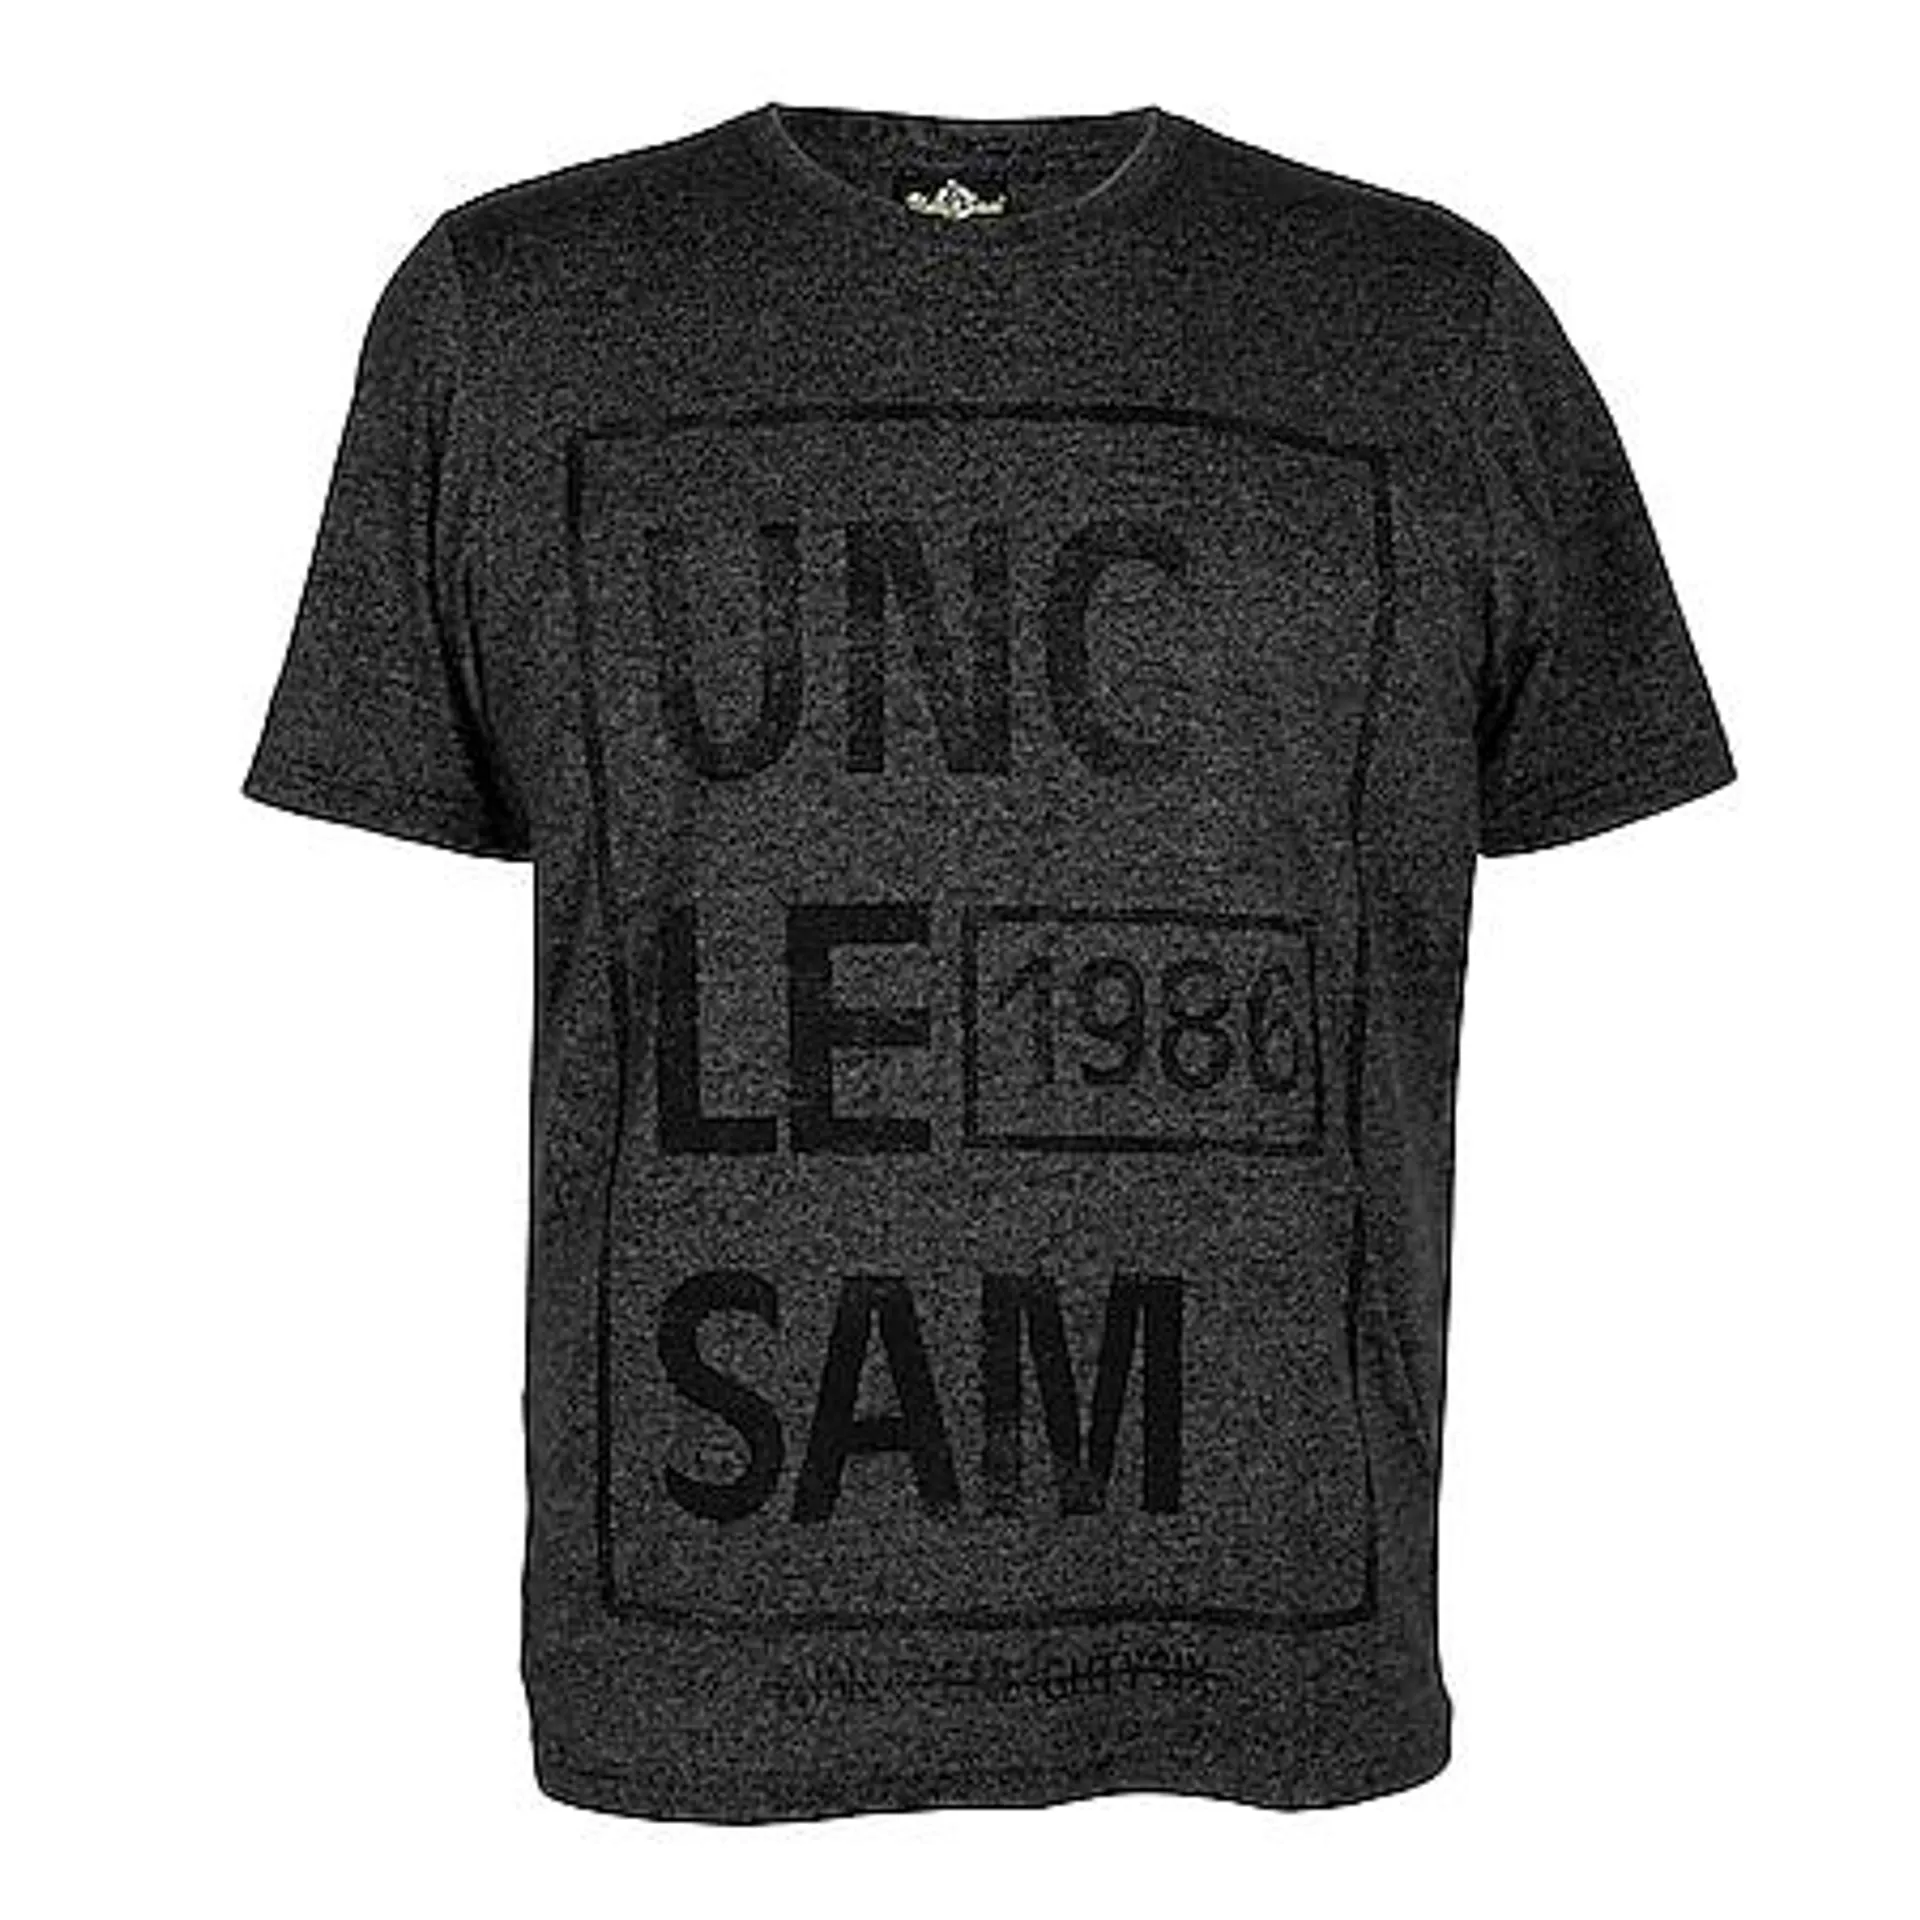 UNCLE SAM Herren T-Shirt, Pigmentdruck, M, anthrazit